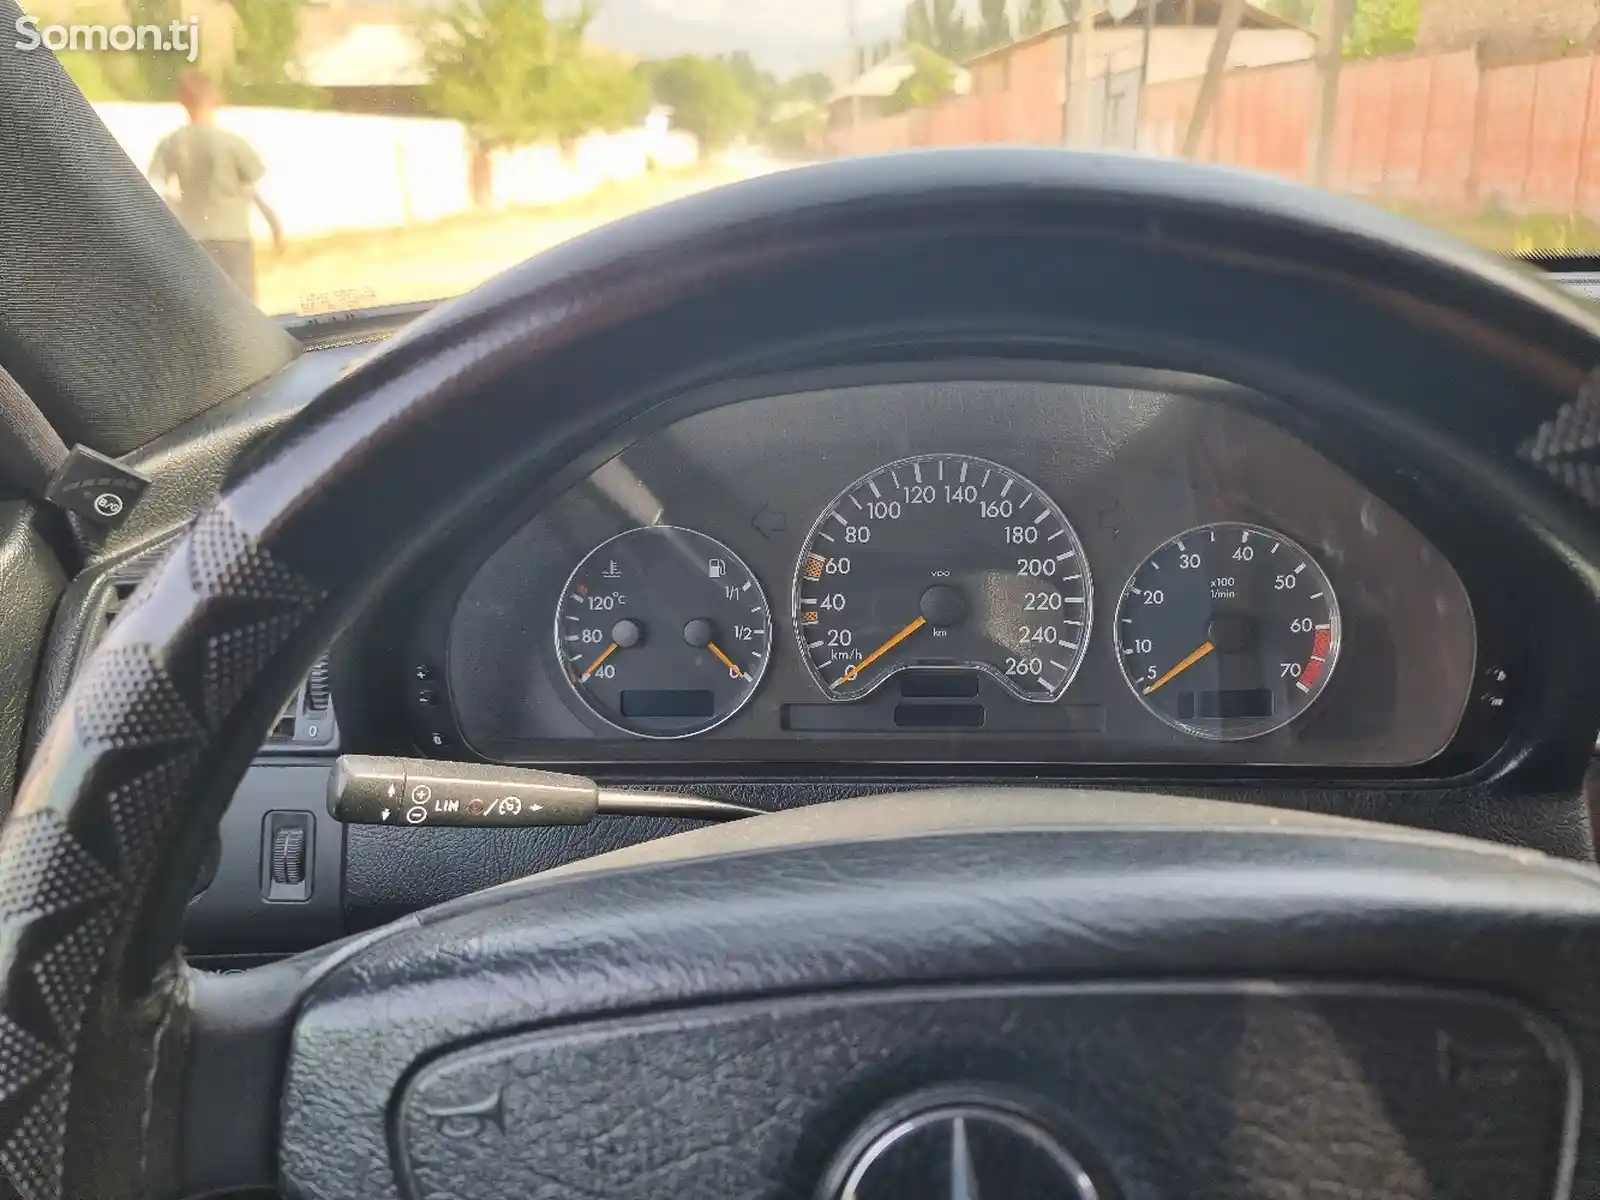 Mercedes-Benz C class, 2000-9